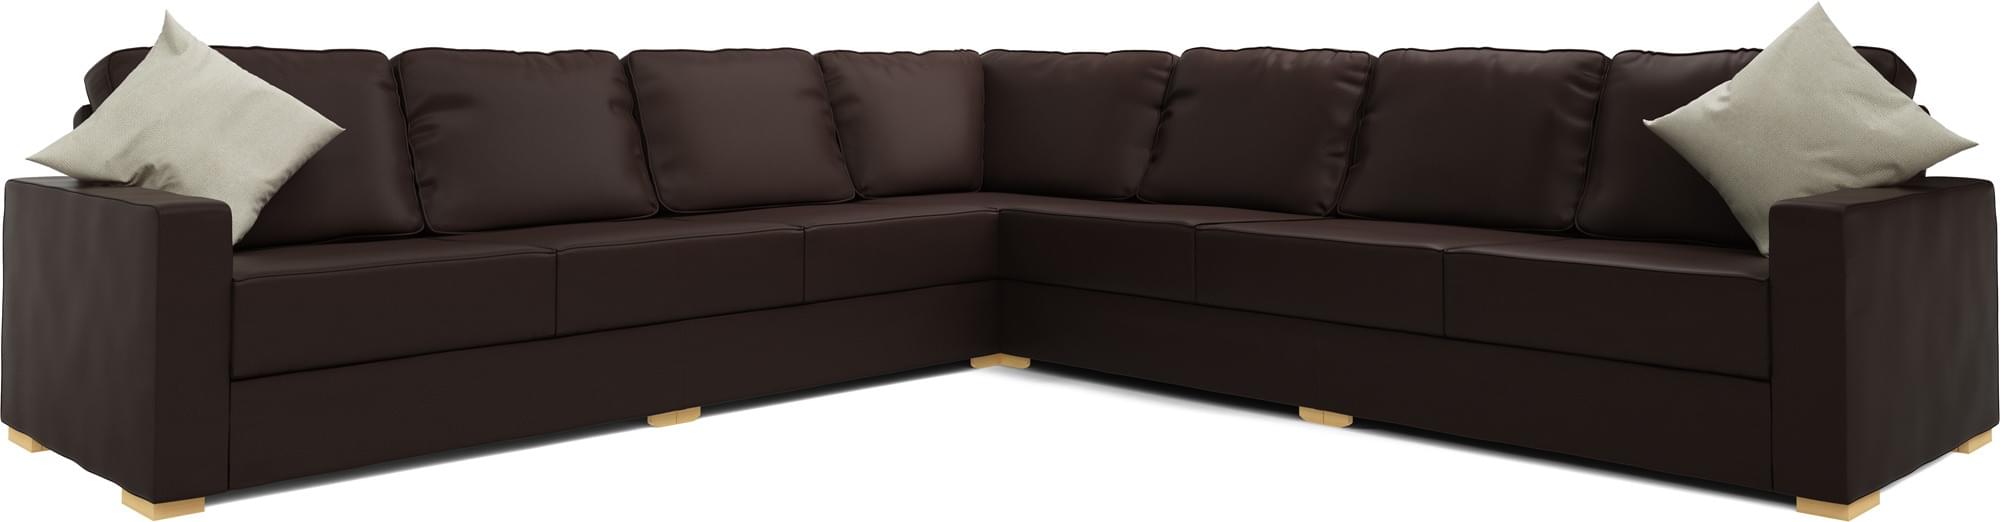 Alda 4X4 Corner Sofa